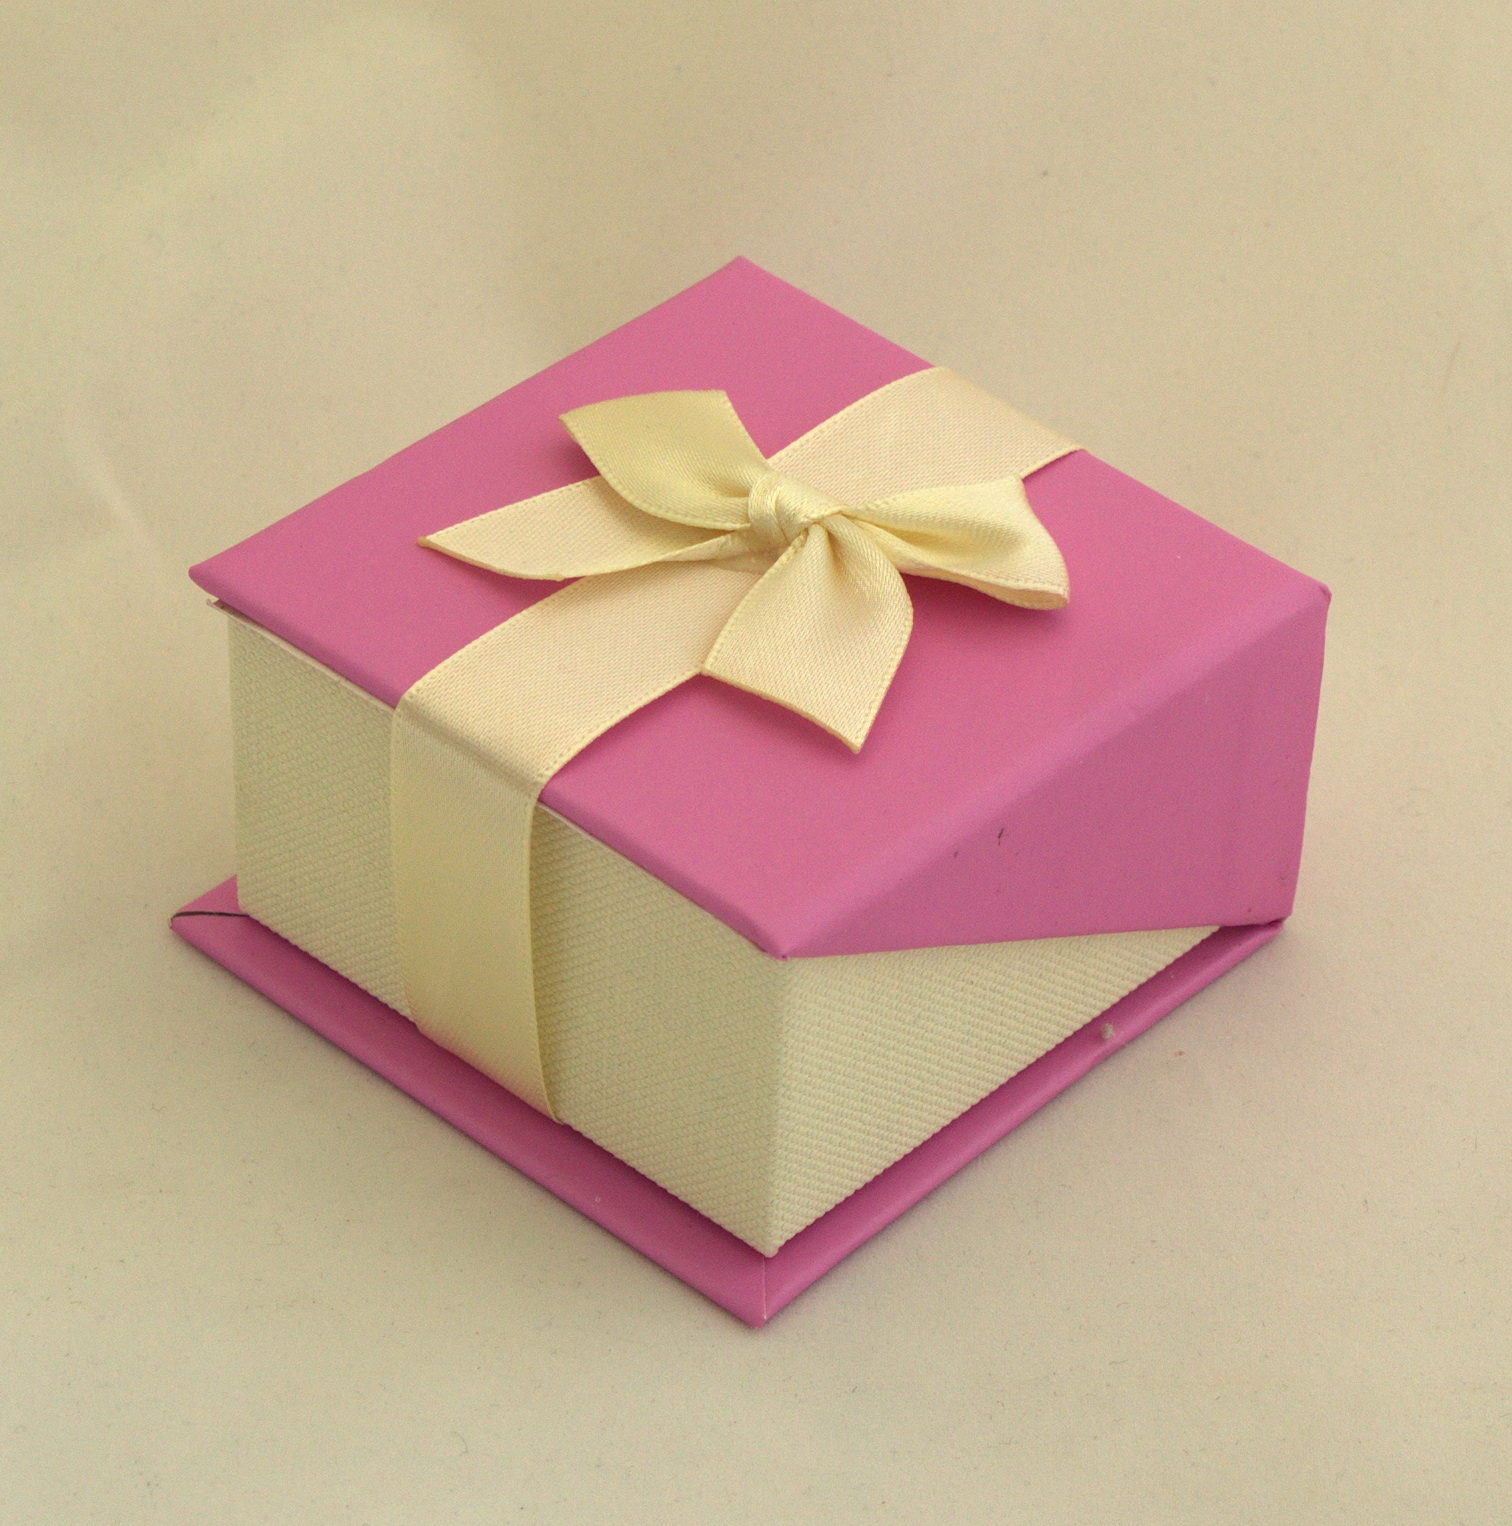 Изящная коробочка идеально подходит для кулона. Бант на магните.
<p>
Четыре цвета: белый, голубой, розовый, шоколадный.
<p>
размер: 6,8см х 7см, высота 4 см